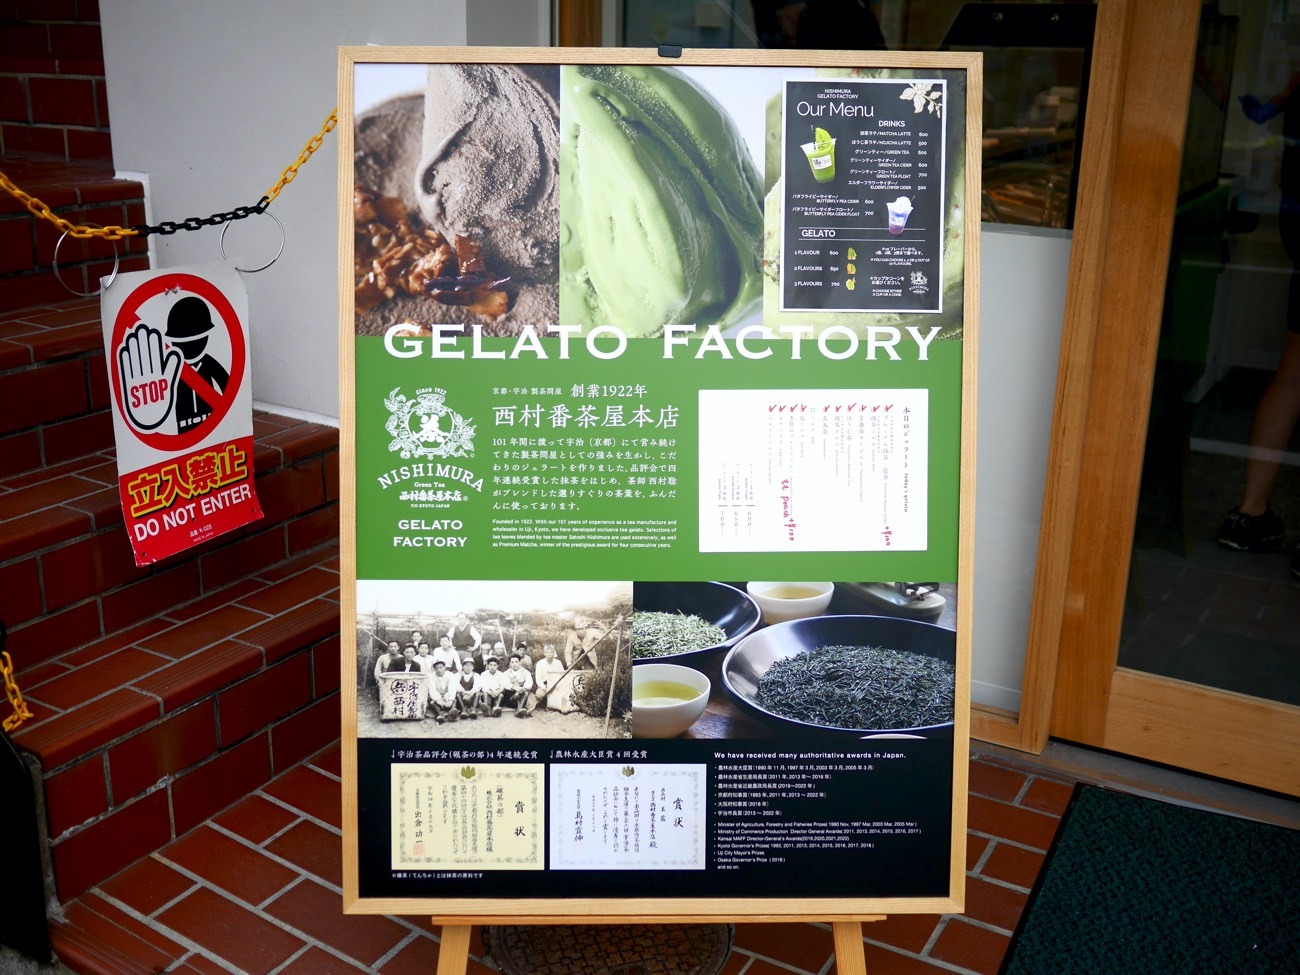 「西村番茶屋本店 GELATO FACTORY」のメニュー